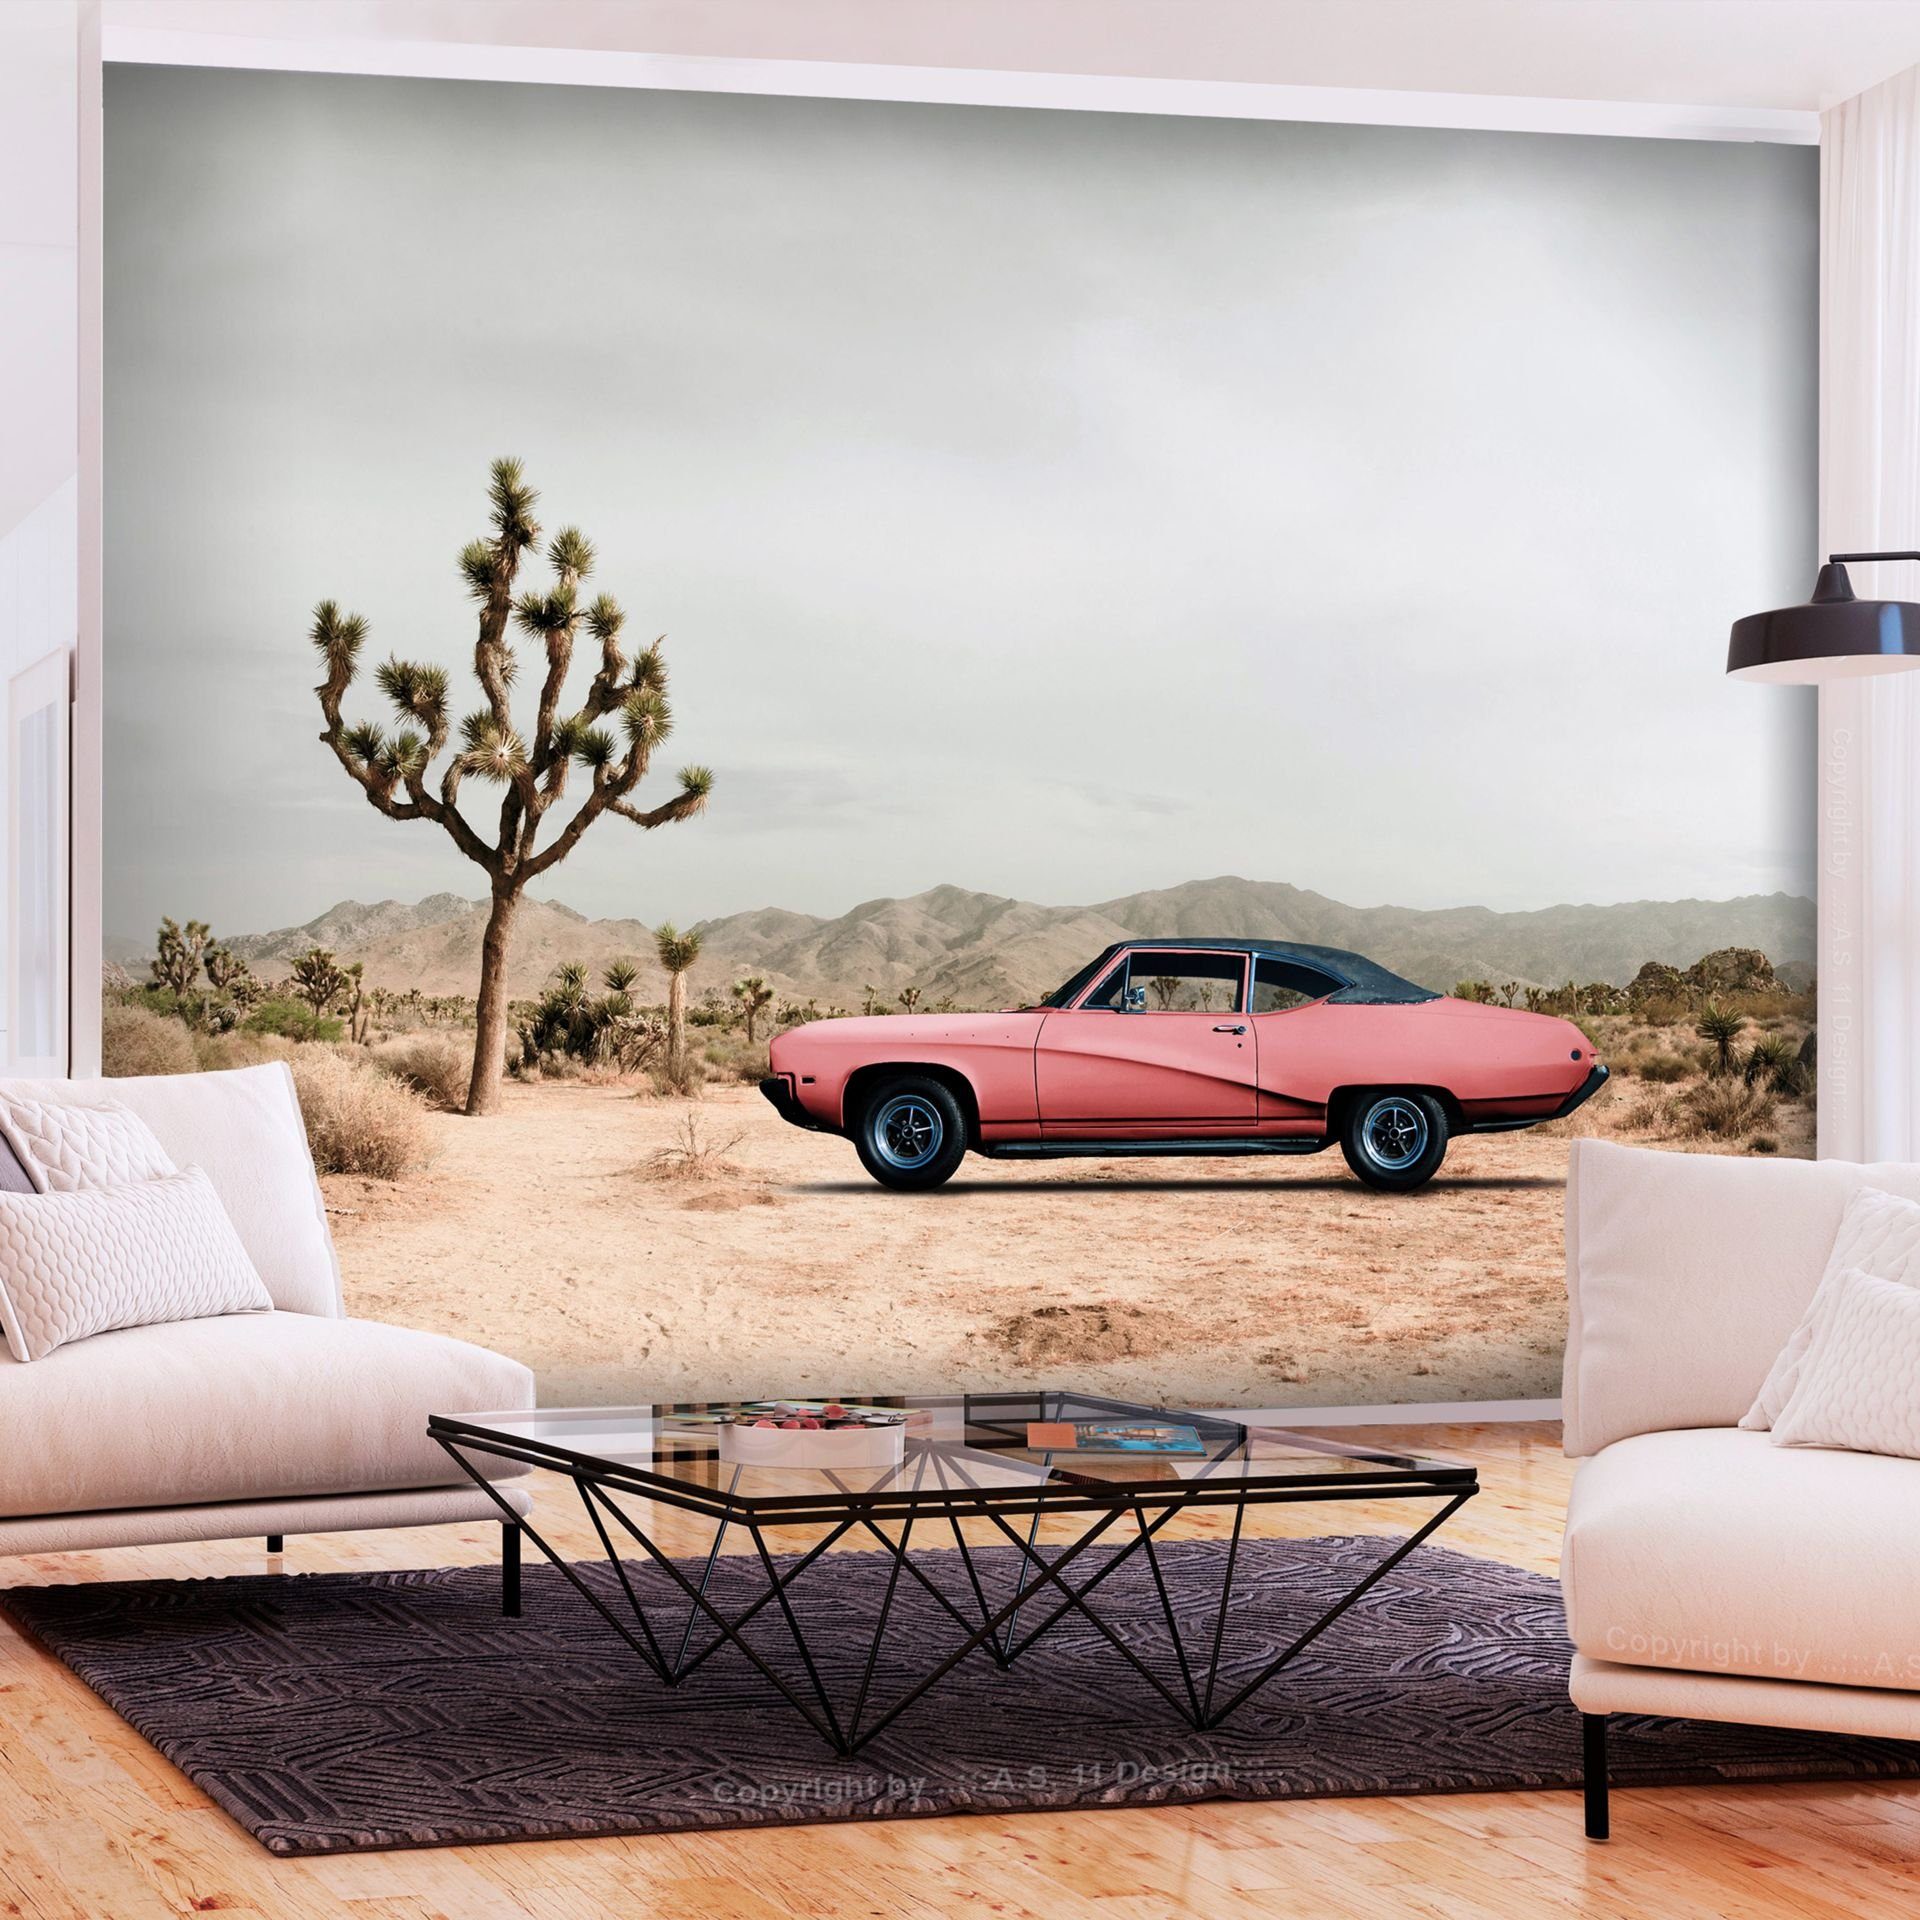 KUNSTLOFT Vliestapete Desert California 1x0.7 m, halb-matt, lichtbeständige Design Tapete